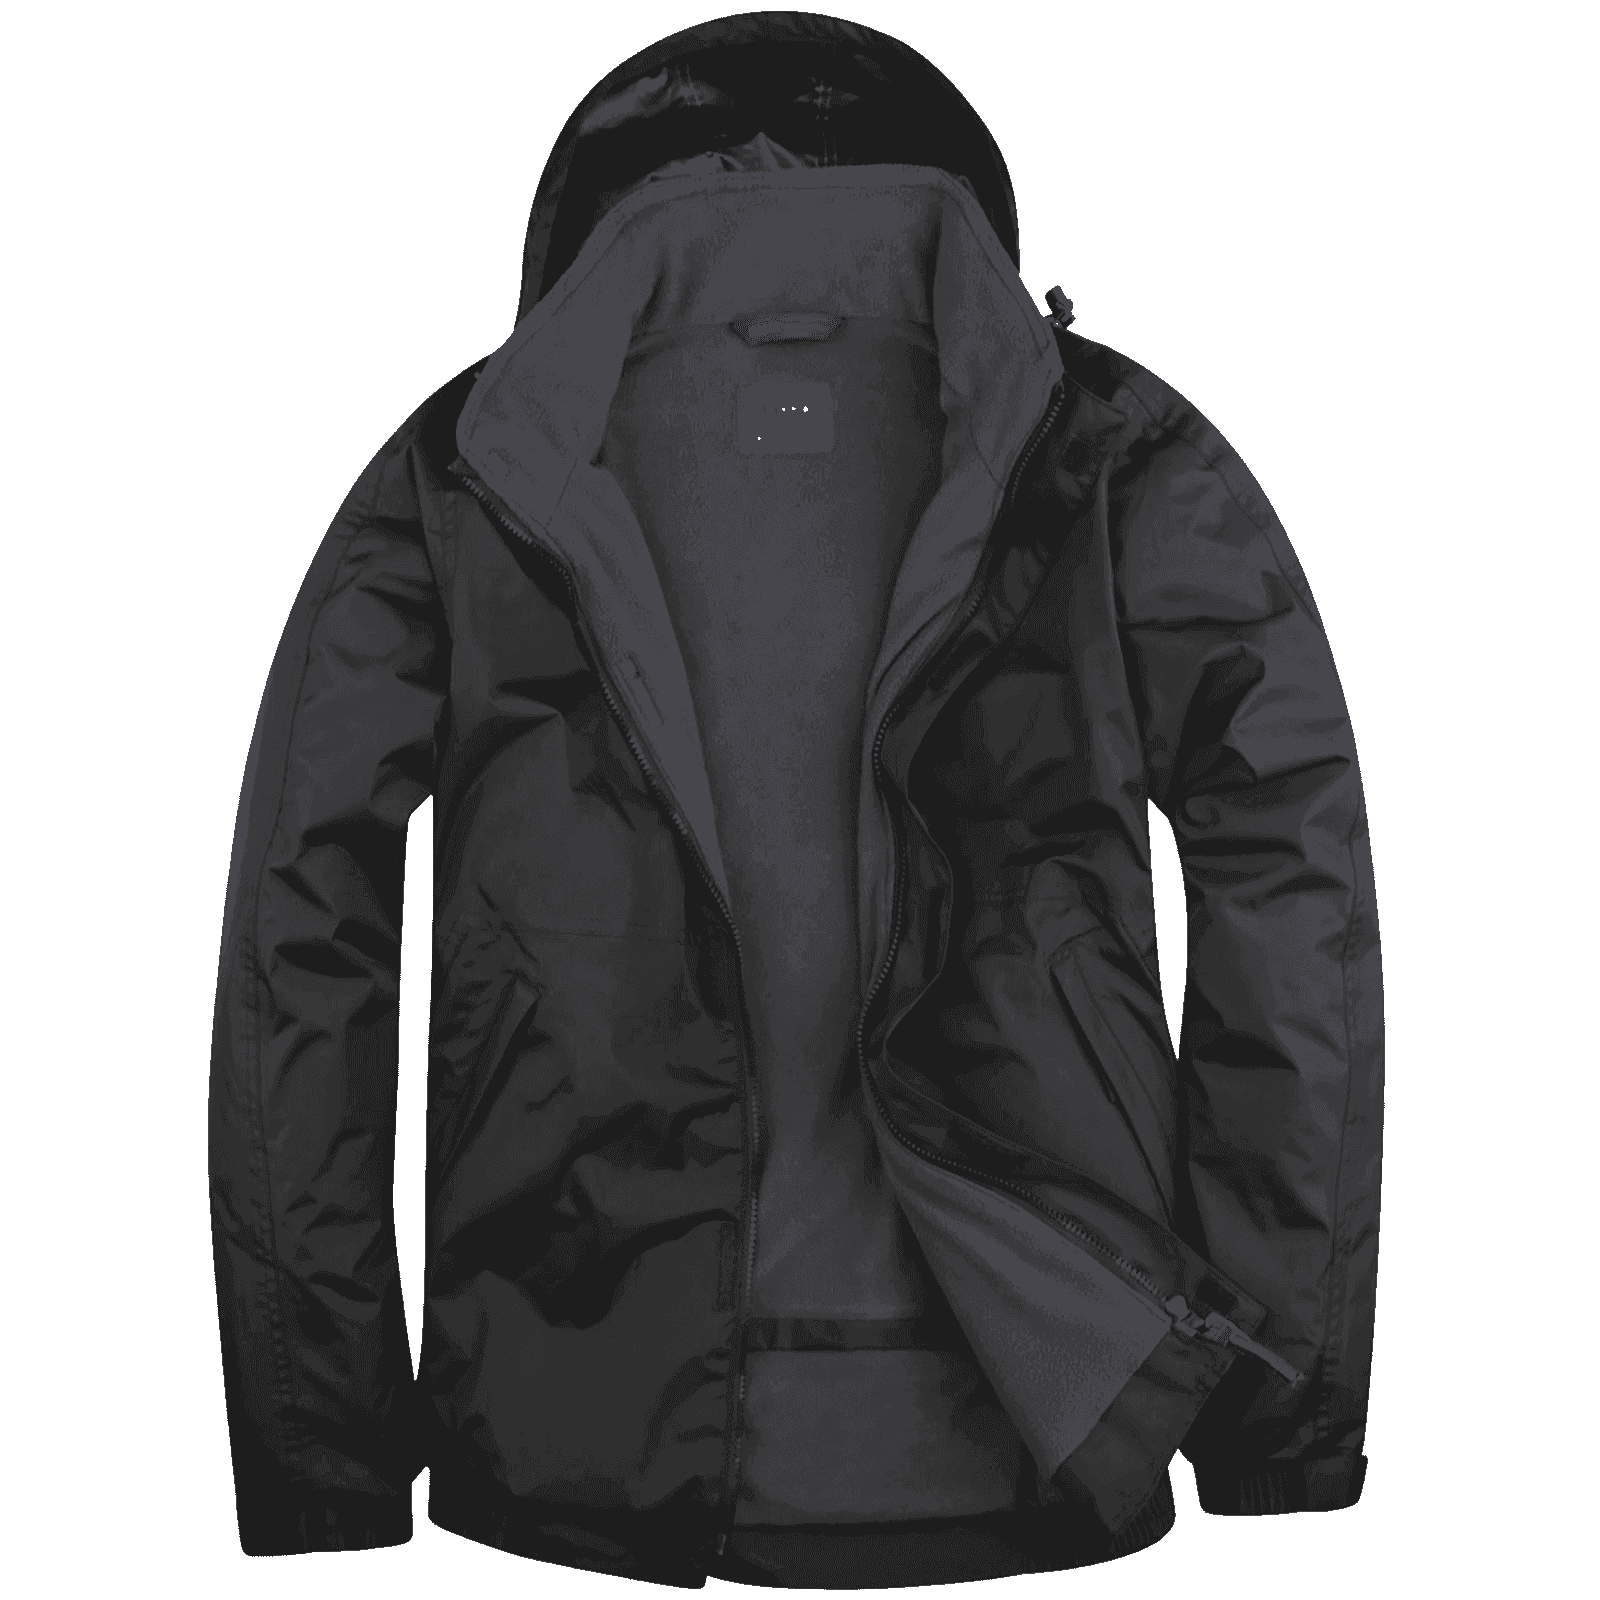 Waterproof Work Jacket UC620 Uneek Black/Grey